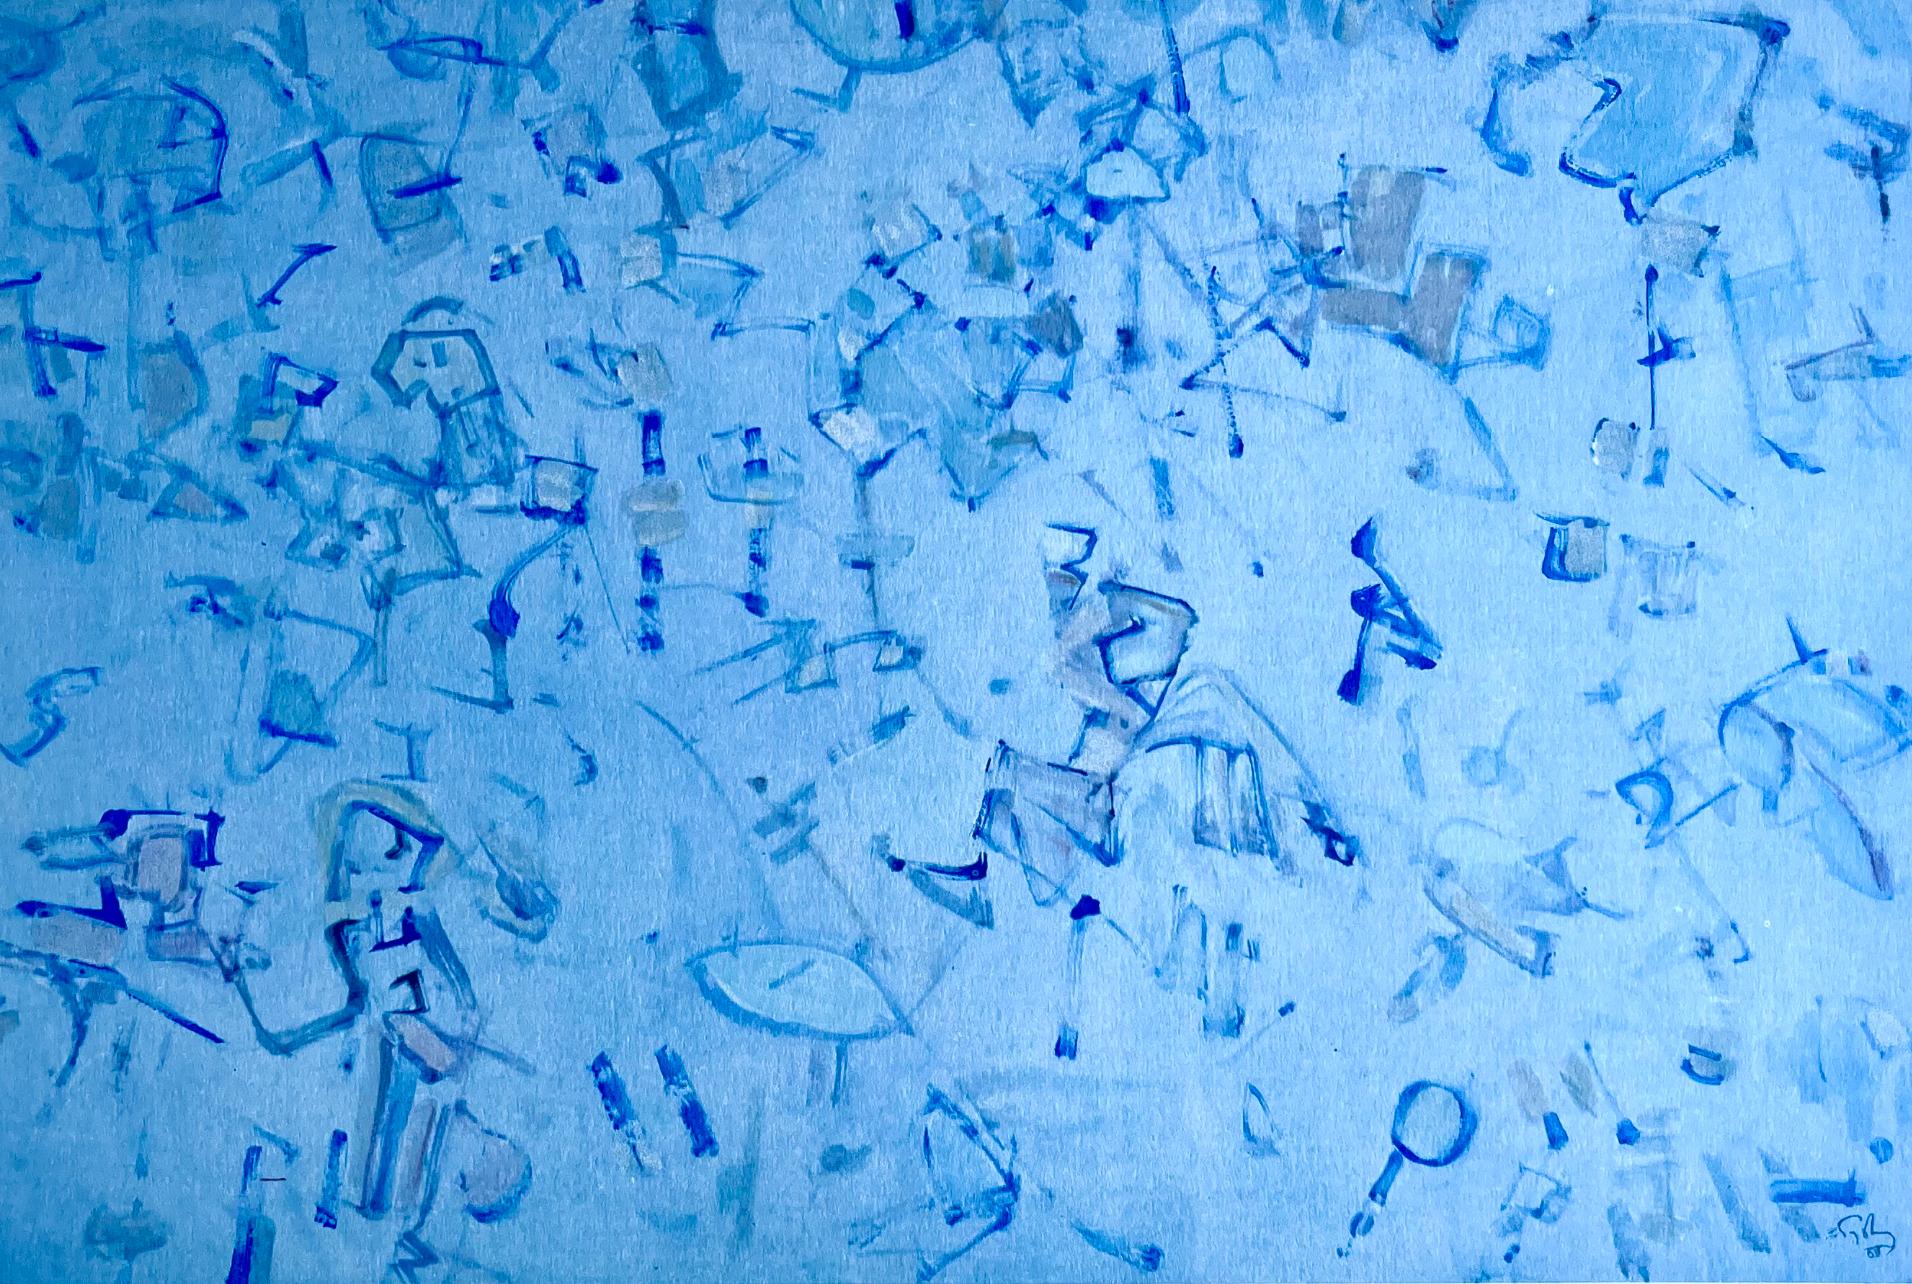 Tobey, Composition en bleu-gris, Mark Tobey: Peintres d'aujourd'hui (after)